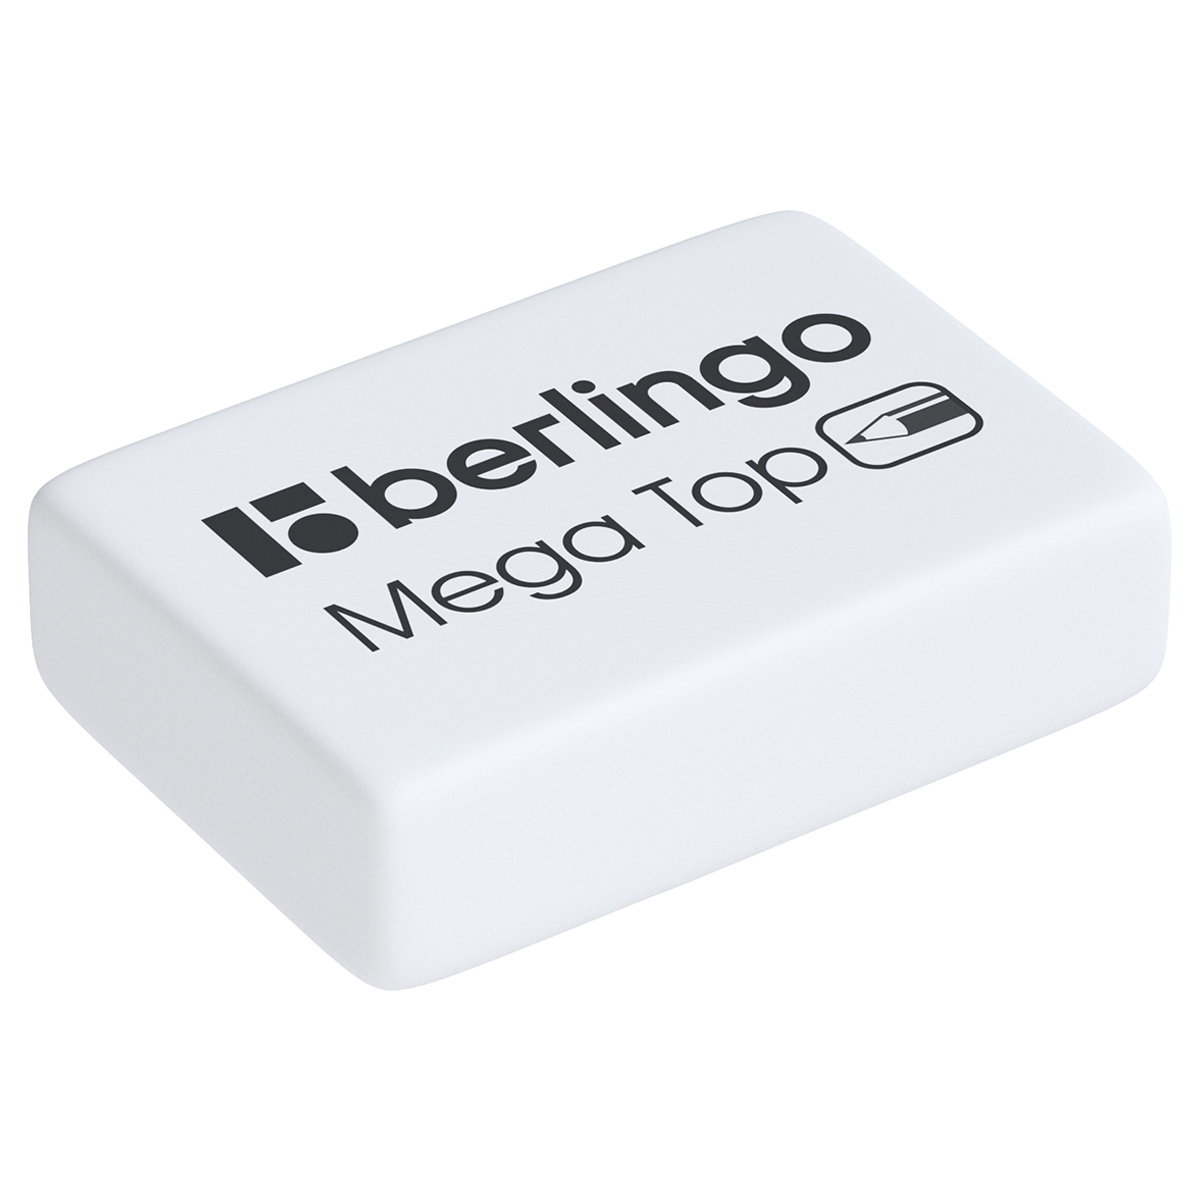 Ластик Berlingo Mega Top, прямоугольный, натуральный каучук, 26*18*8мм